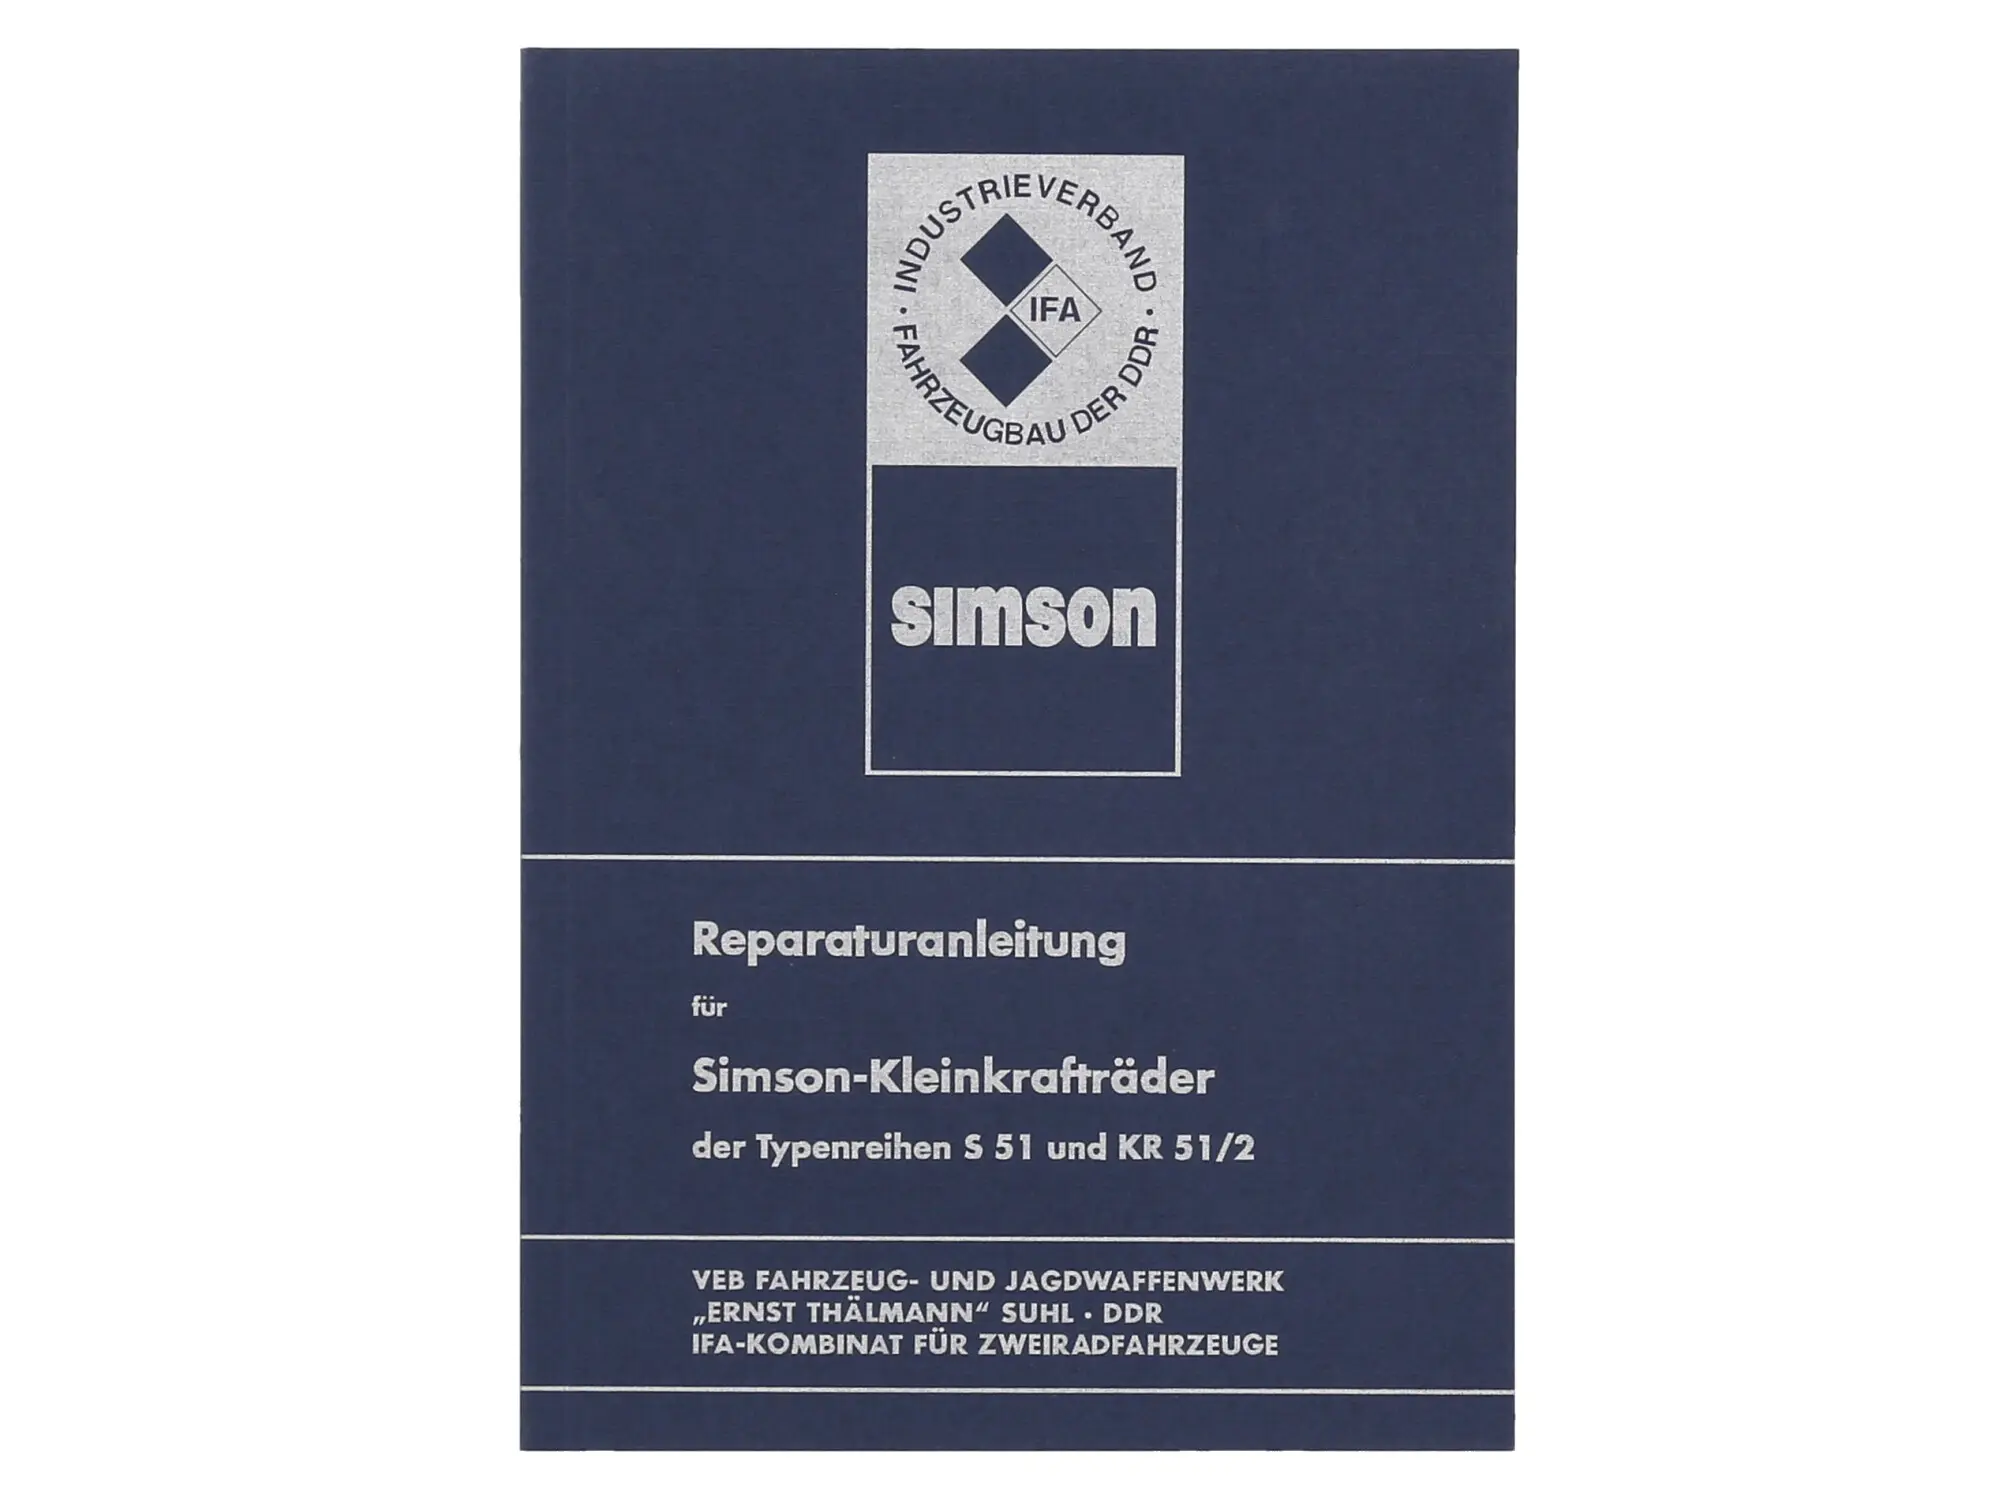 Buch - Reparaturanleitung Simson S51, Schwalbe KR51/2 (ohne Schaltpläne), Art.-Nr.: 10030854 - Bild 1